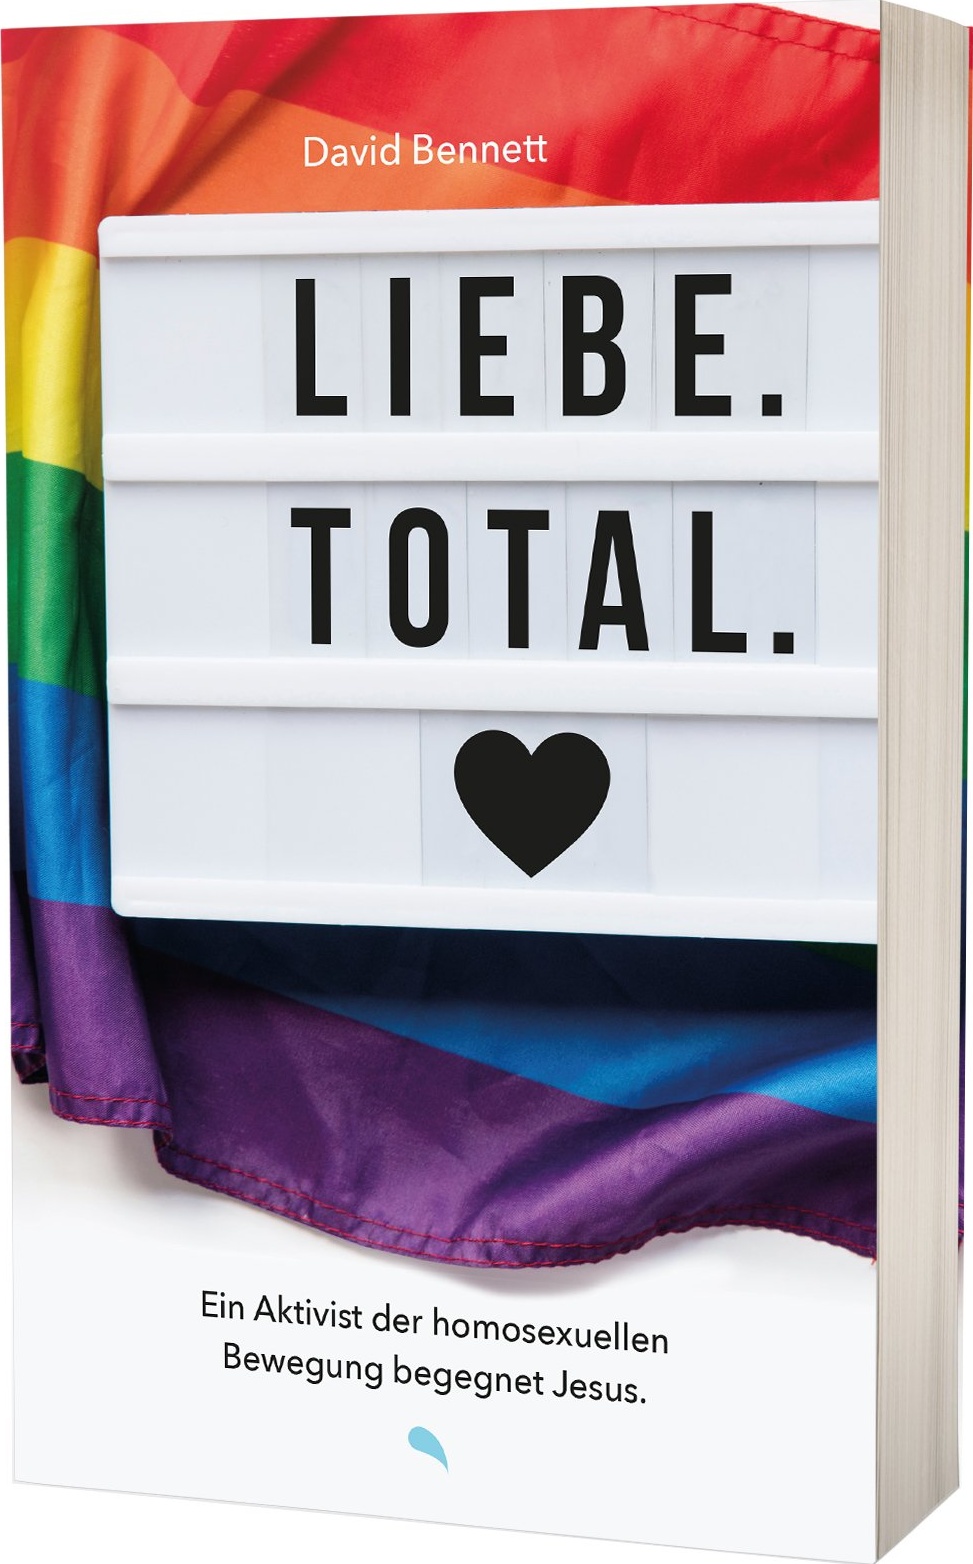 Liebe Total - Ein Aktivist der homosexulellen Bewegung begegnet Jesus